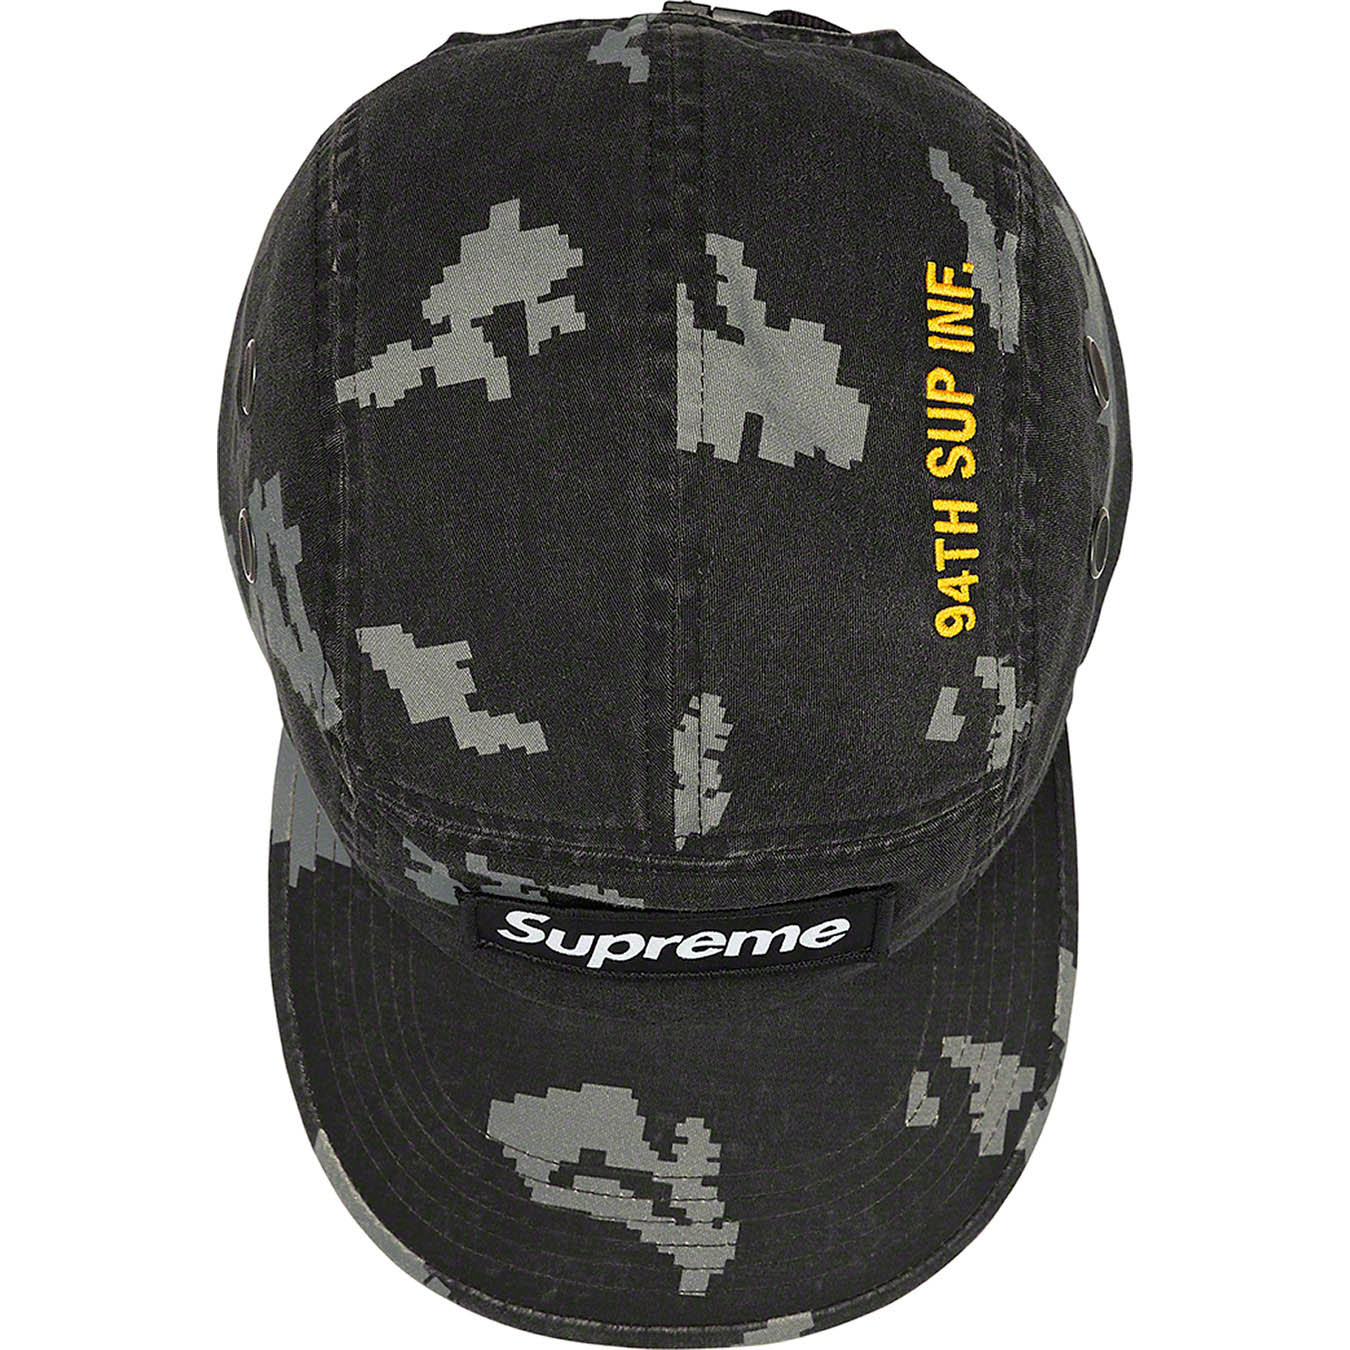 Supreme Military Camp Cap